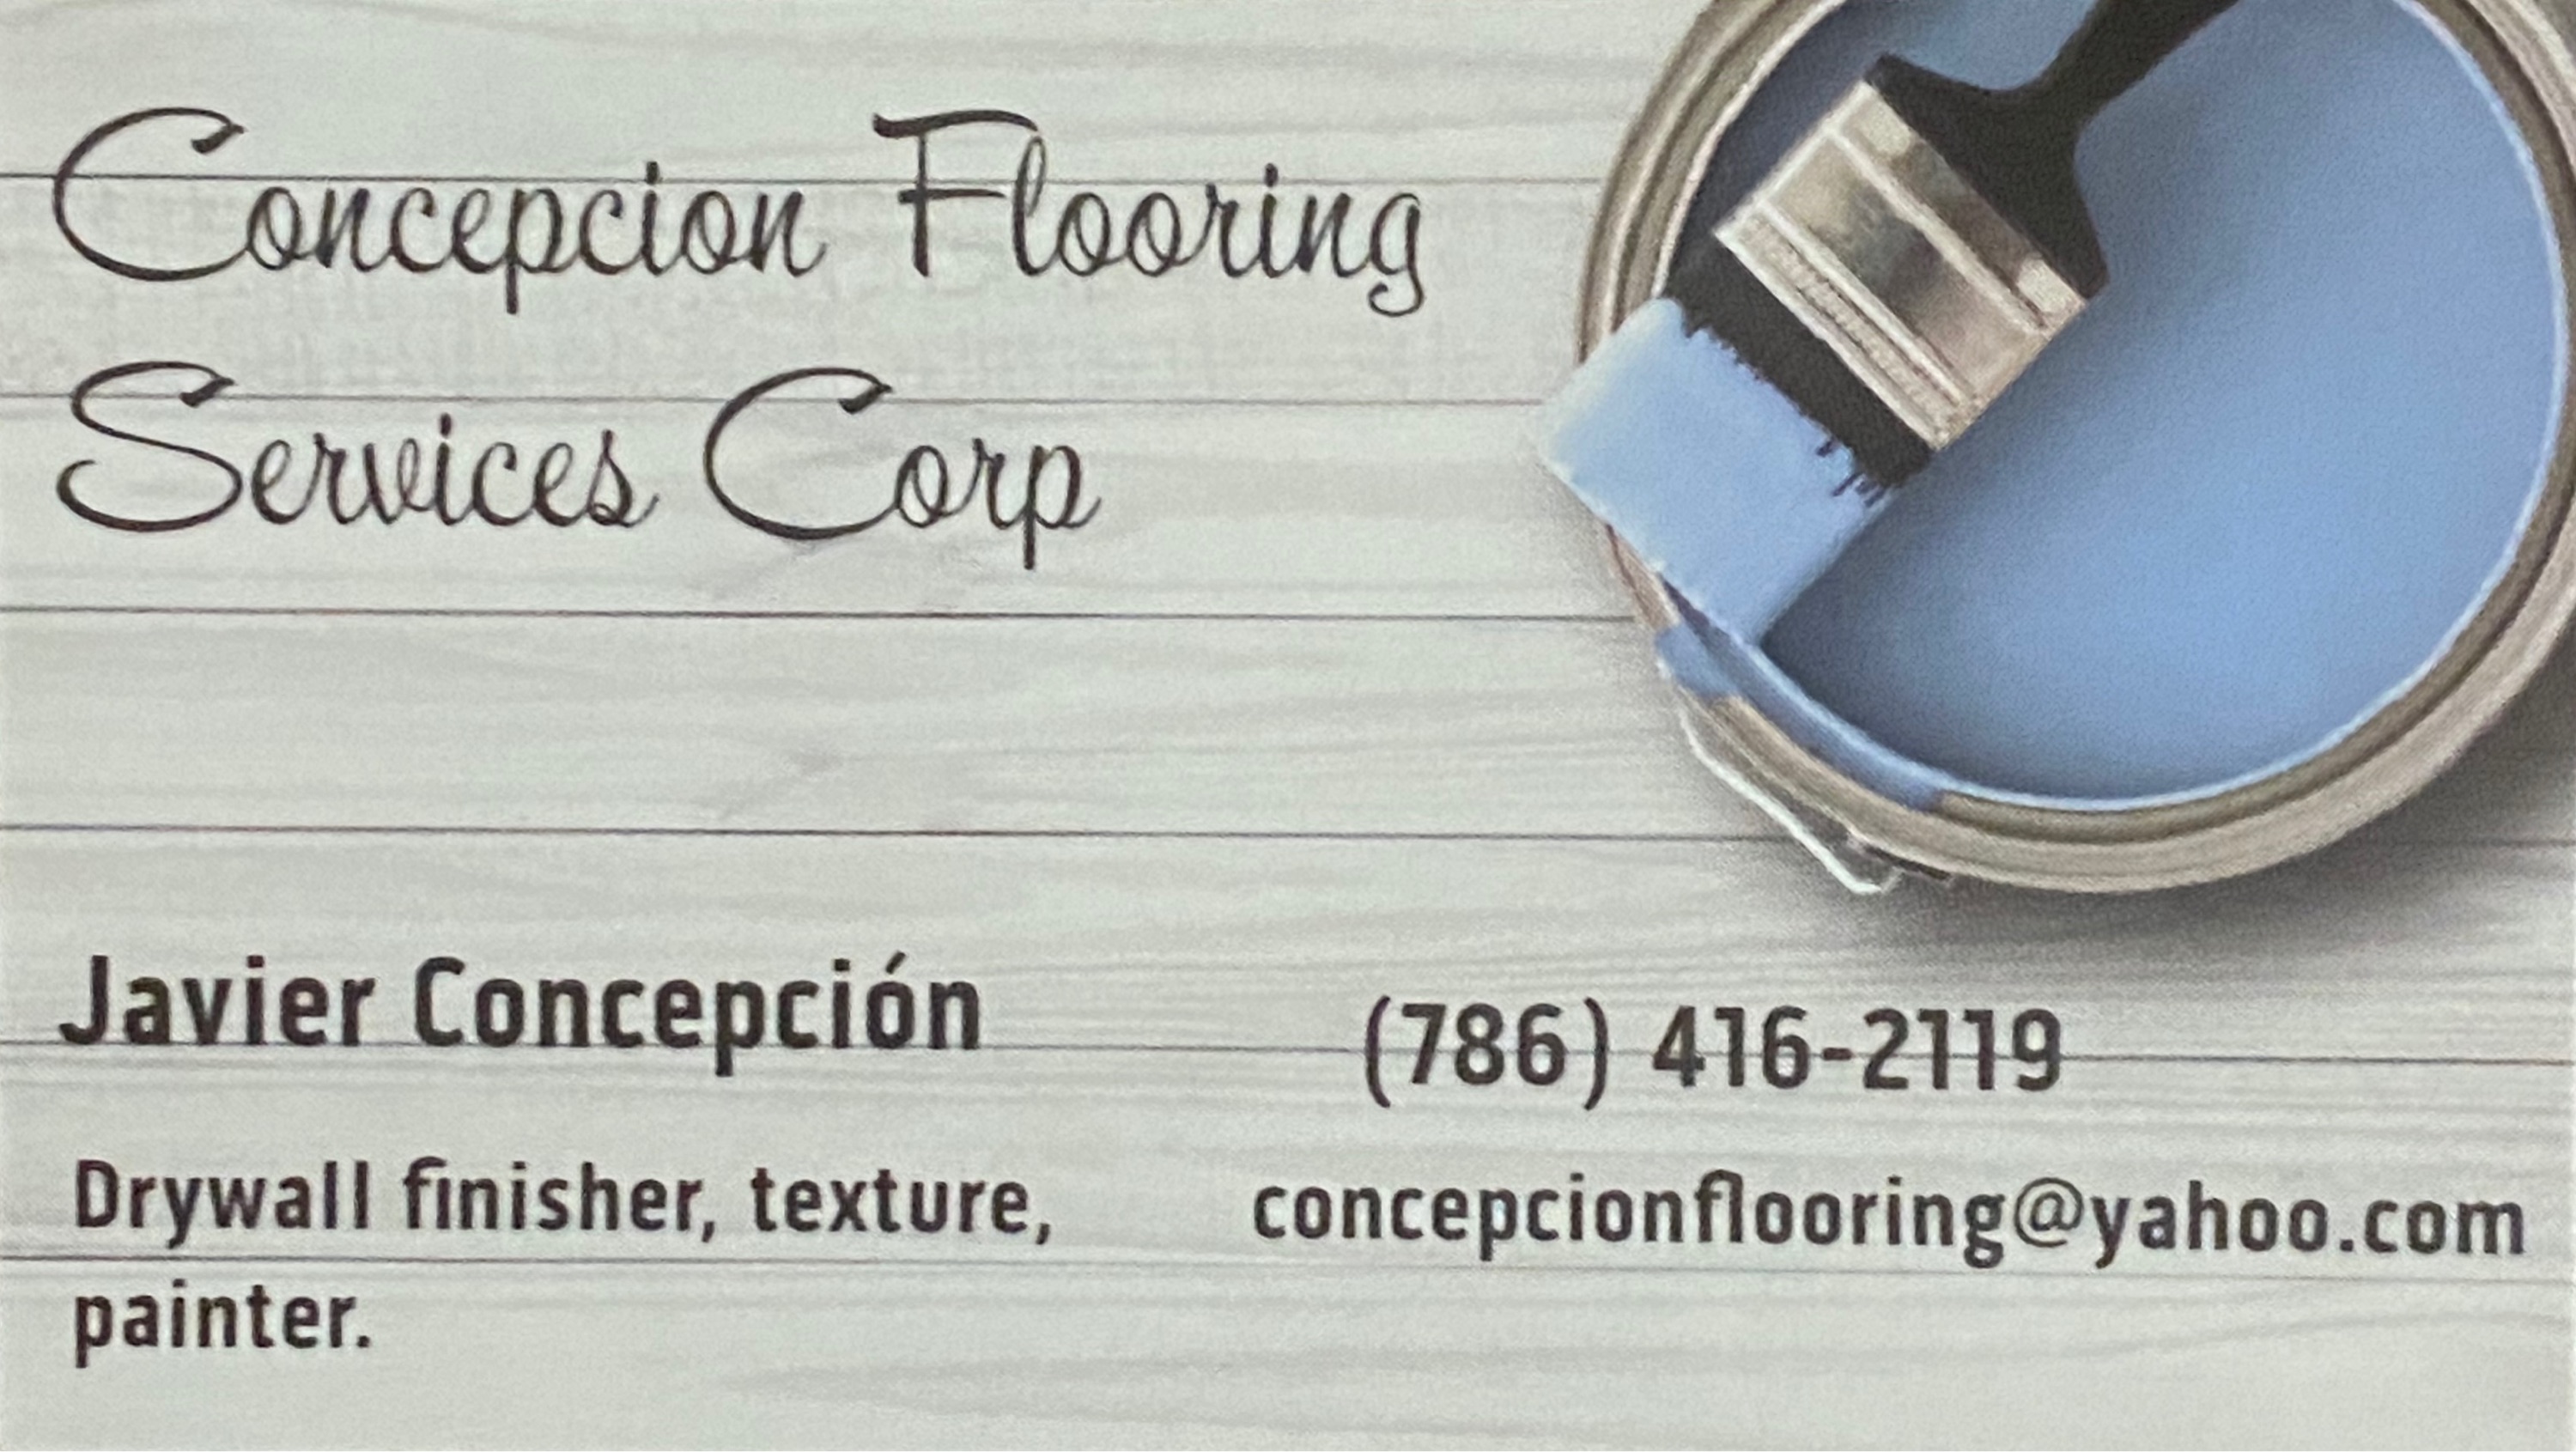 Concepcion Flooring Service, Corp. Logo